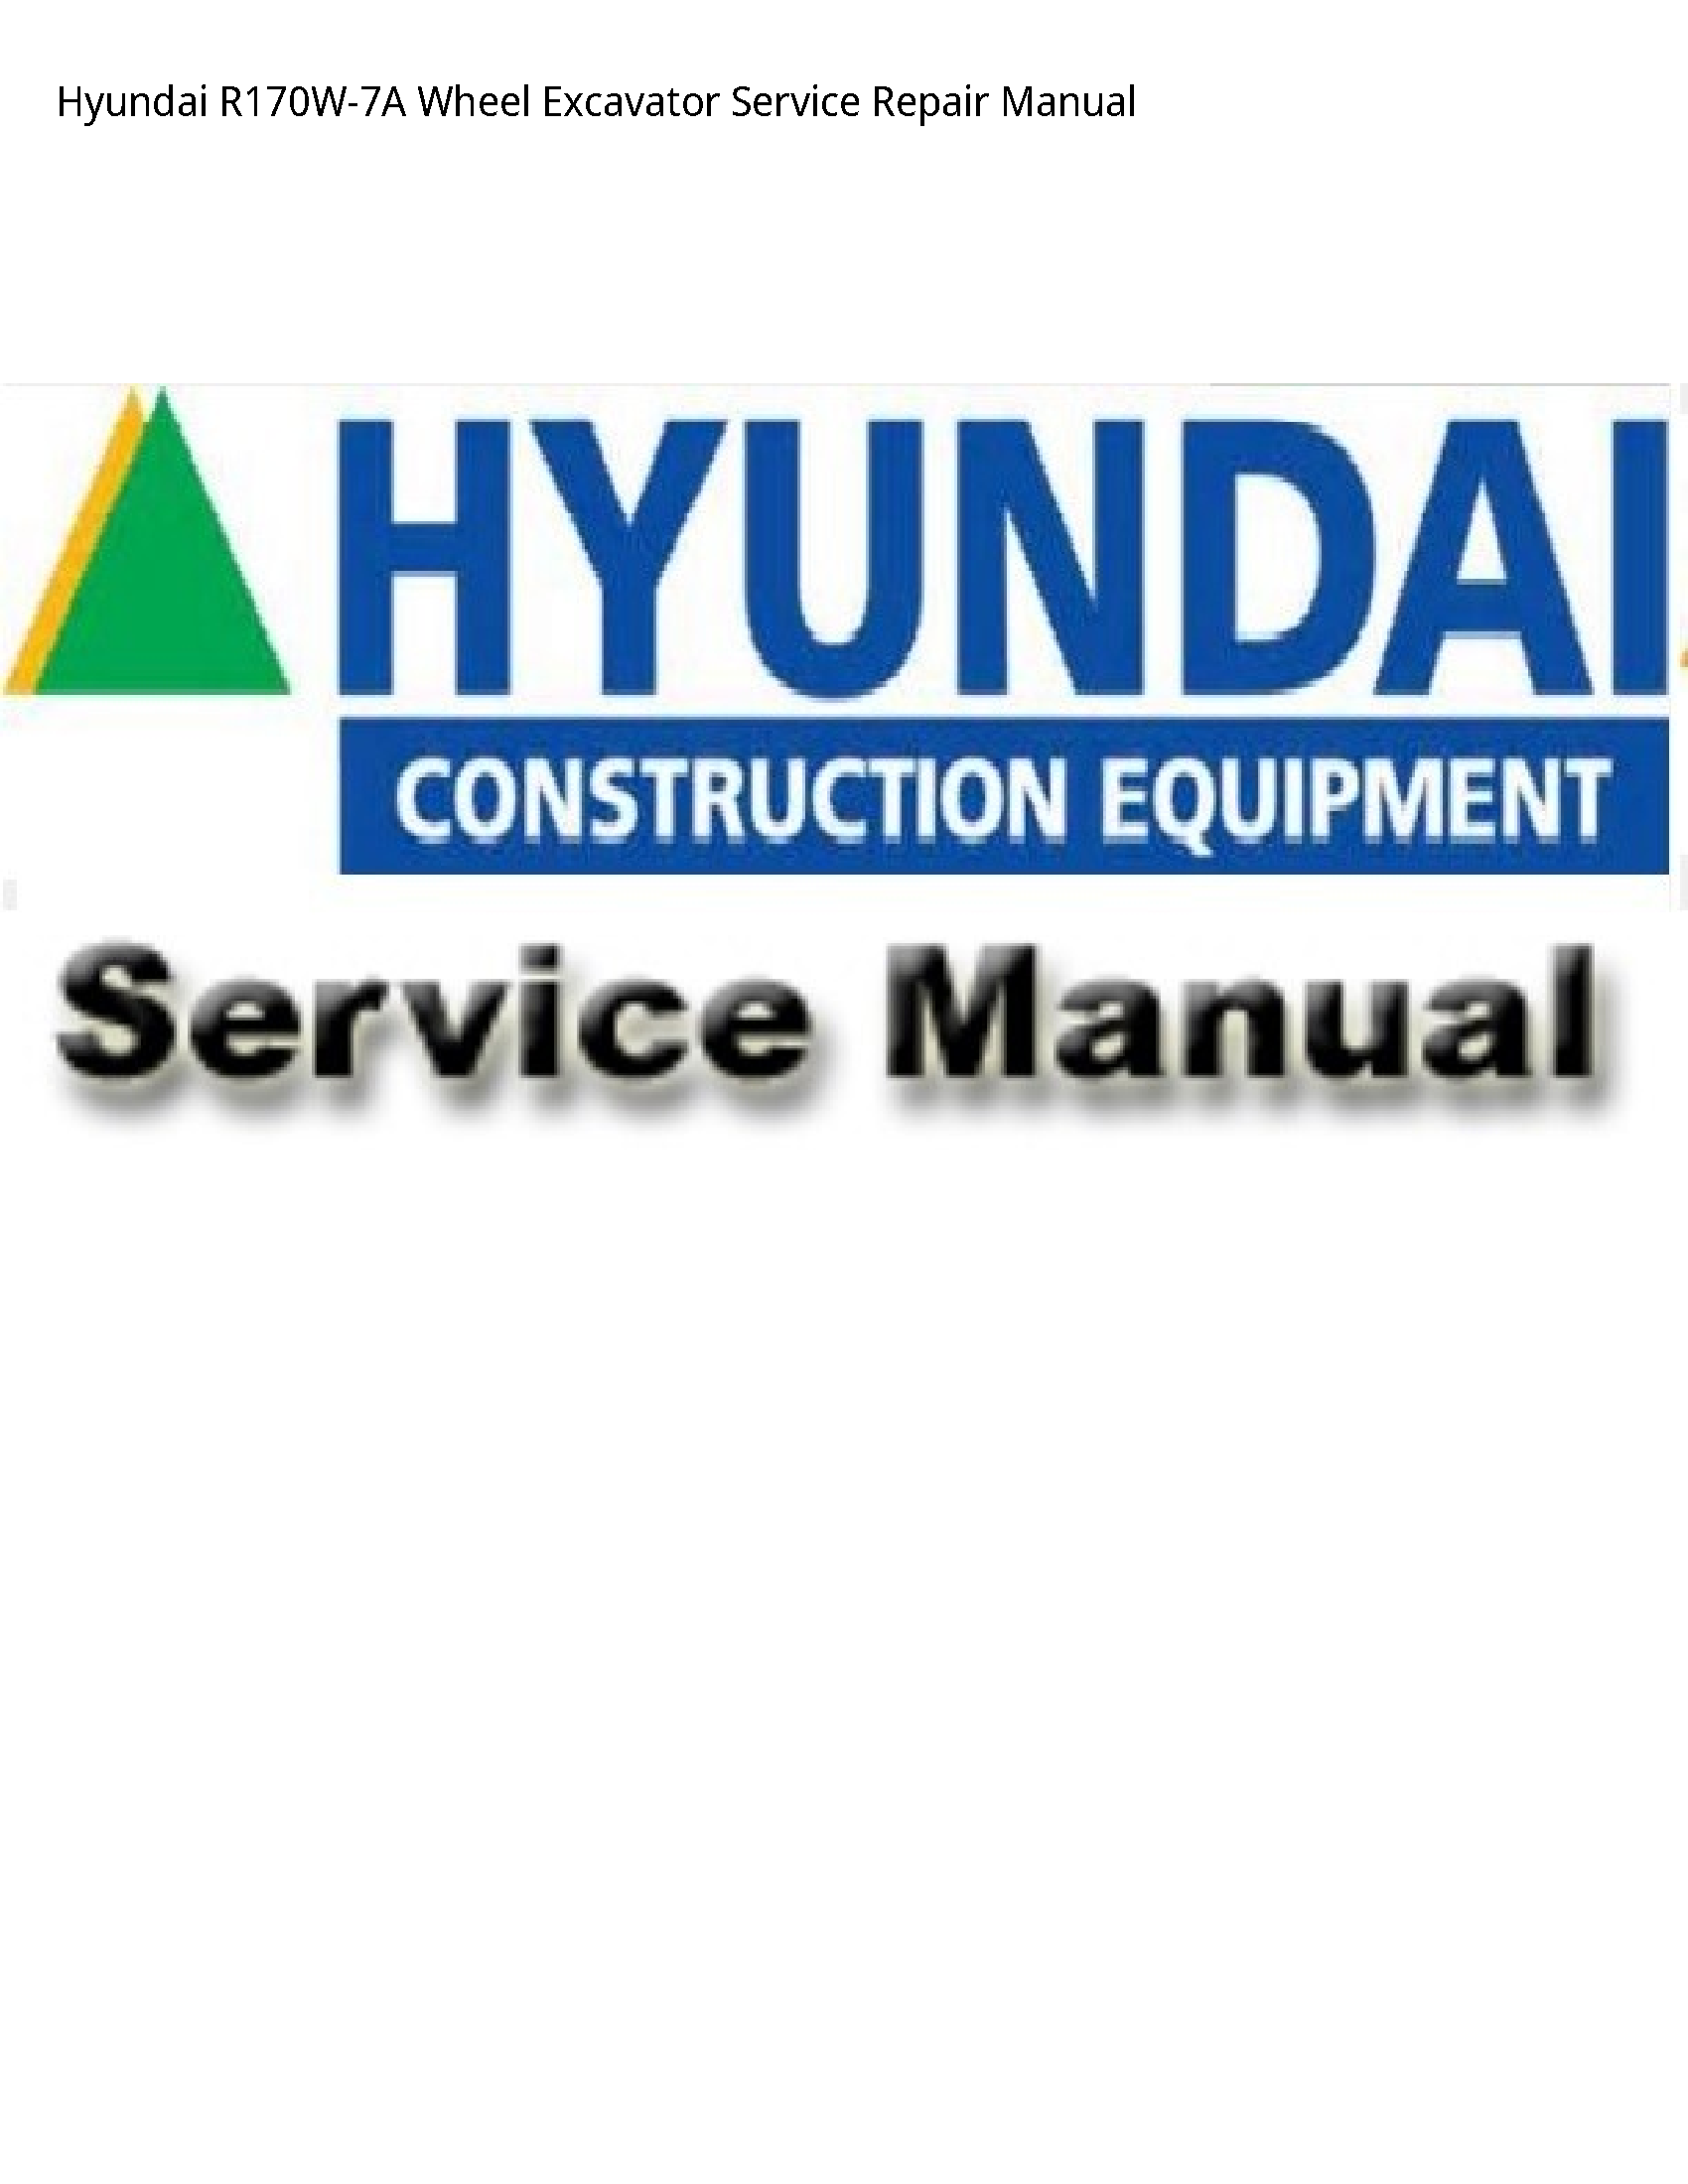 Hyundai R170W-7A Wheel Excavator manual